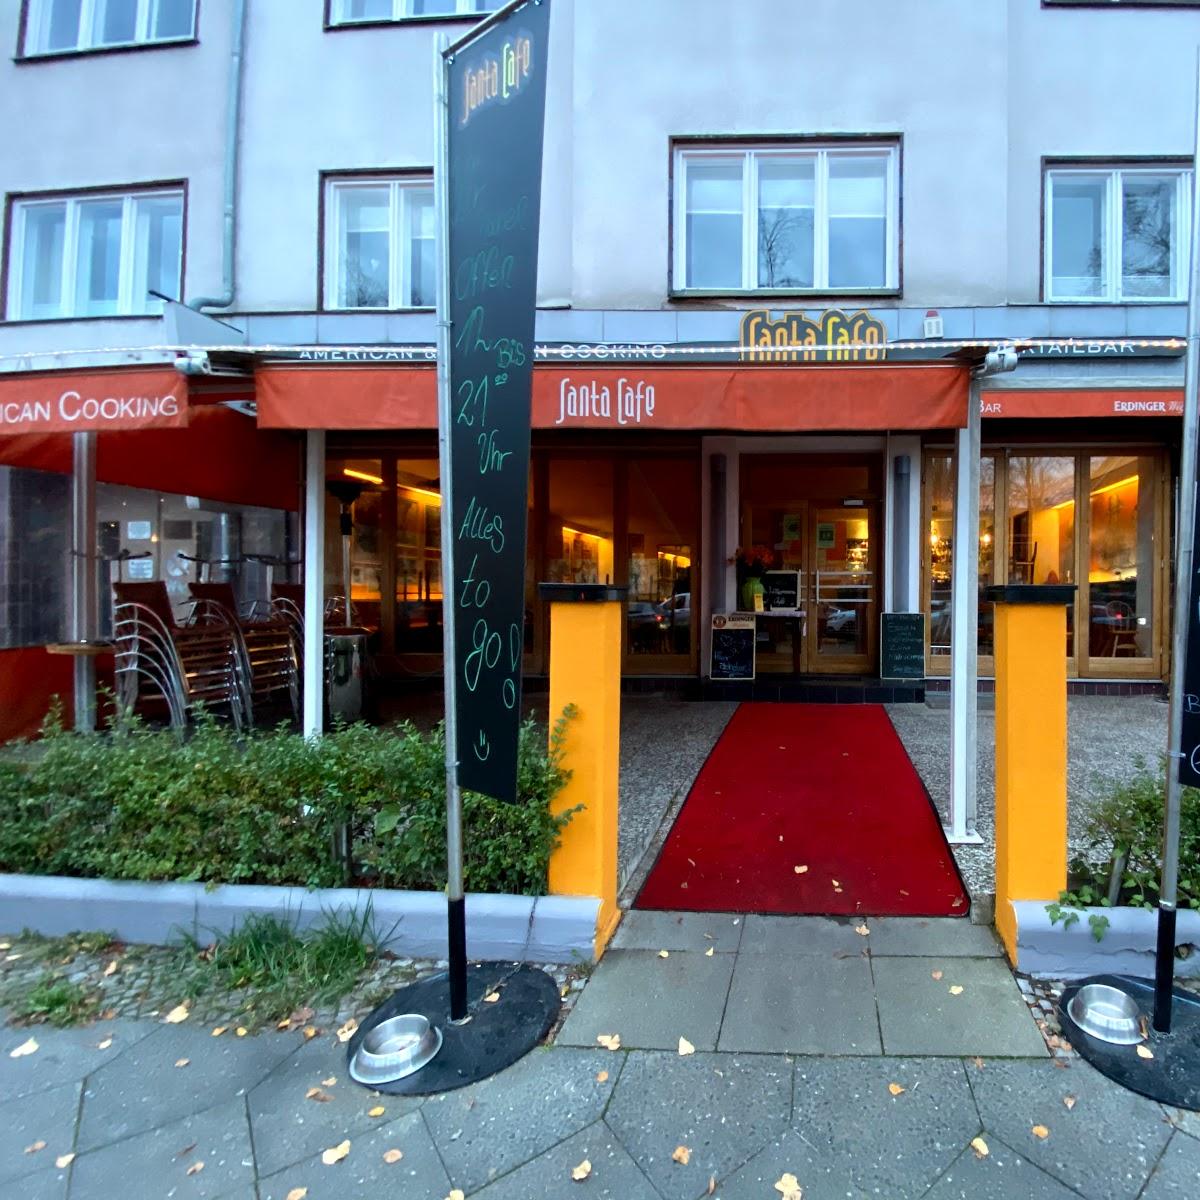 Restaurant "Santa Café" in  Berlin